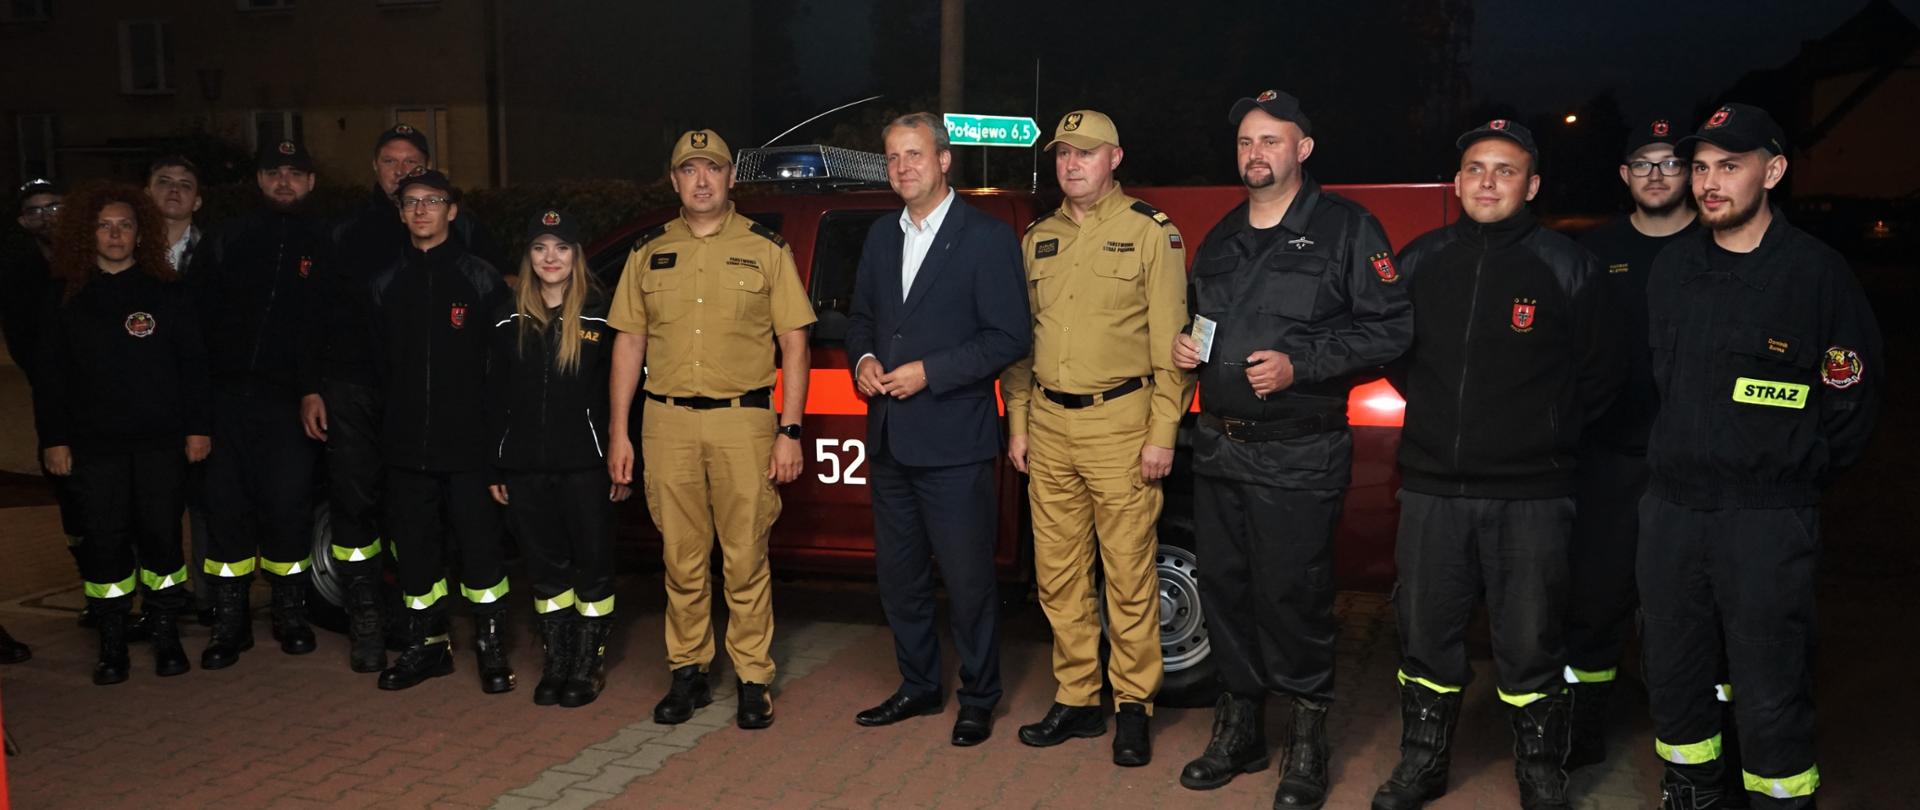 Wielkopolski Komendant Wojewódzki wraz z Wojewodą Wielkopolskim przekazali kluczyki do samochodu pożarniczego dla OSP Ryczywół